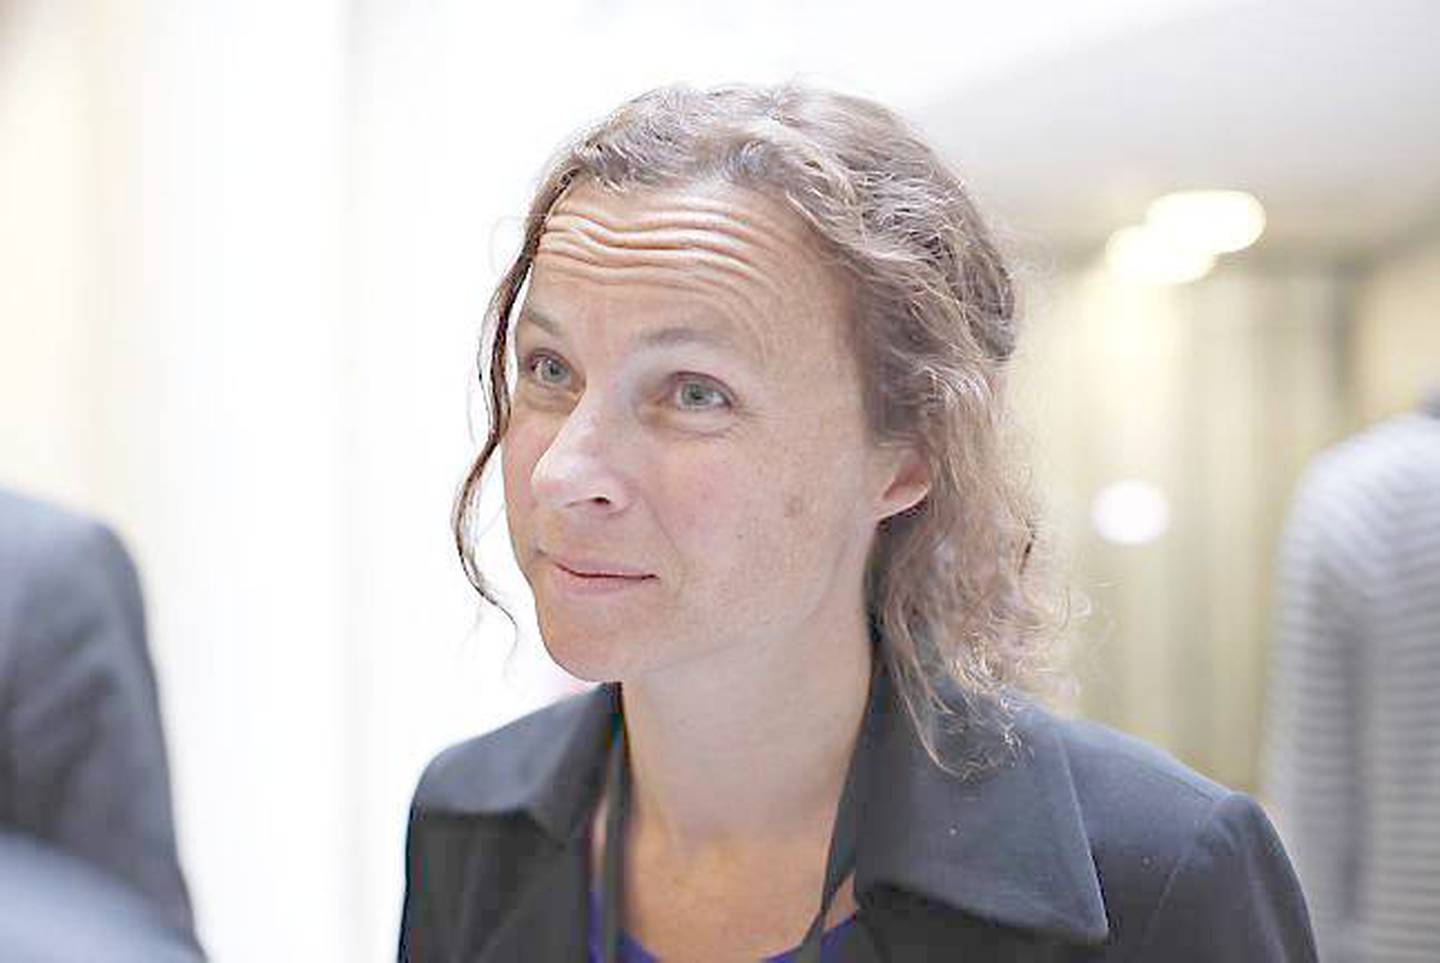 Bistandsadvokat Cathrine Grøndahl, her under domsavsigelsen mot Anders Behring Breivik, 24. august 2012. I årets utgave av norske Granta har hun skrevet dikt om 22.juli-rettssaken.  FOTO: ANETTE KARLSEN/NTB SCANPIX